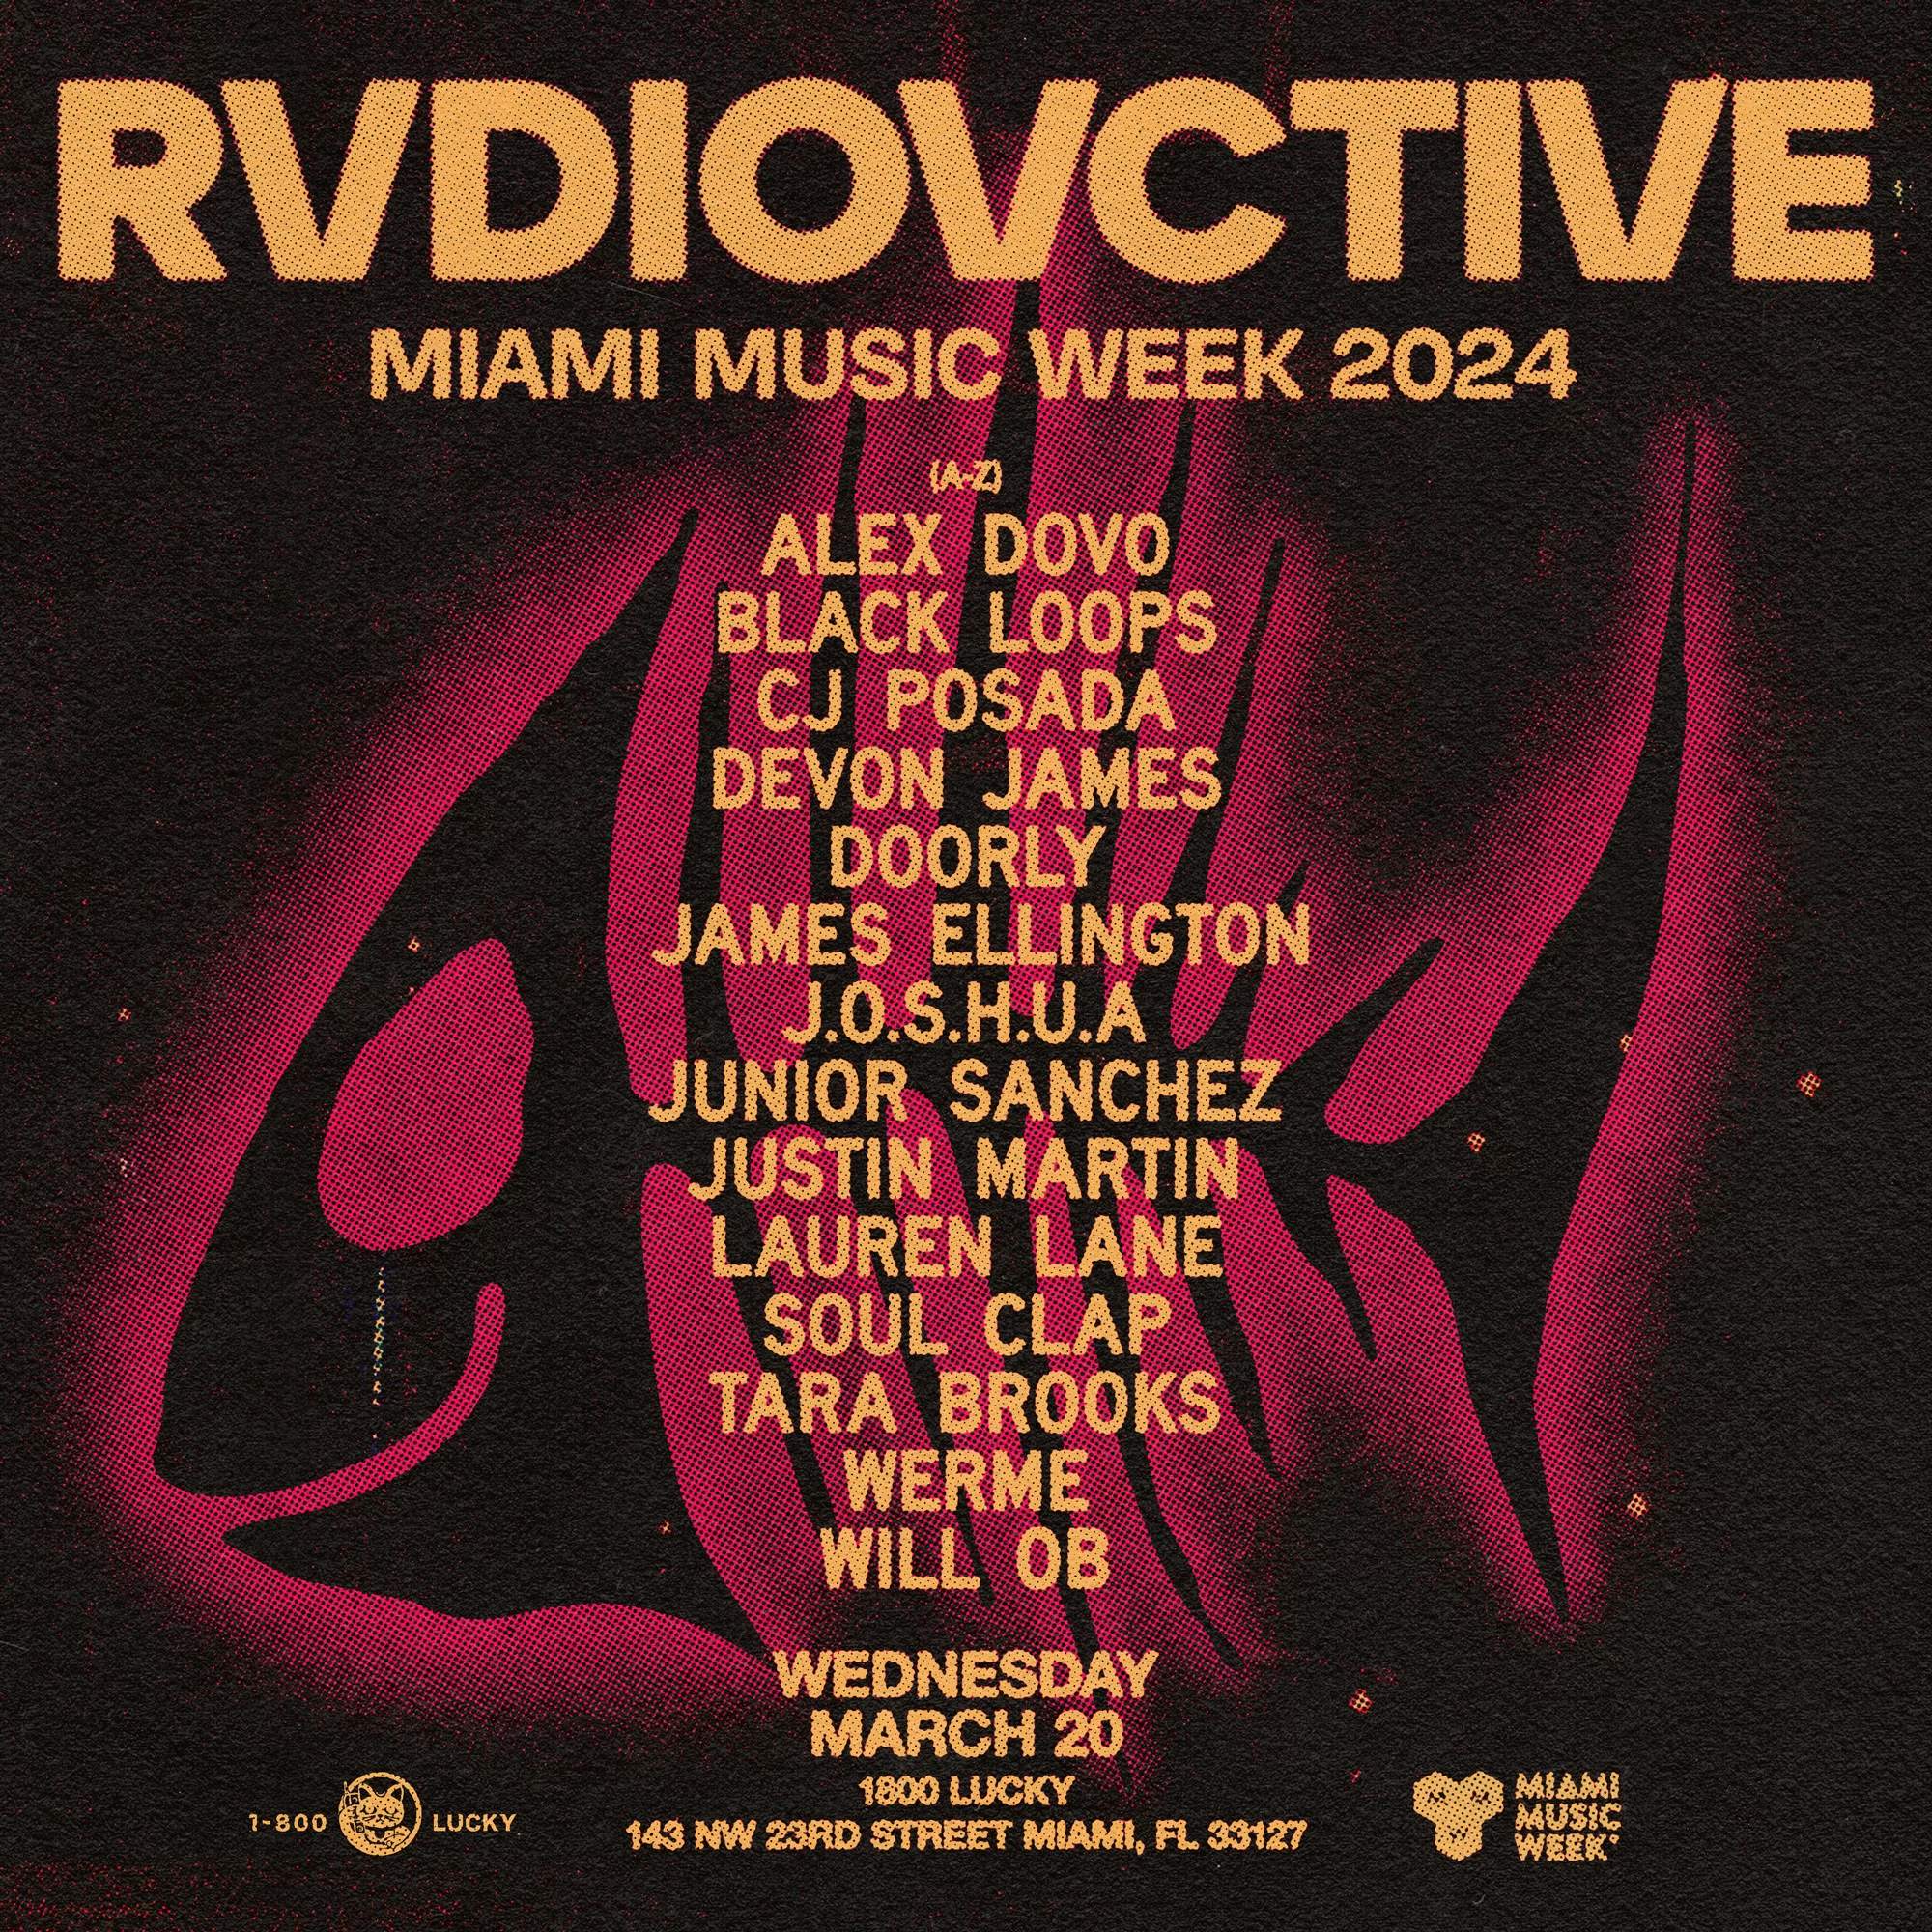 RVDIOVCTIVE Miami Music Week 2024 - フライヤー表